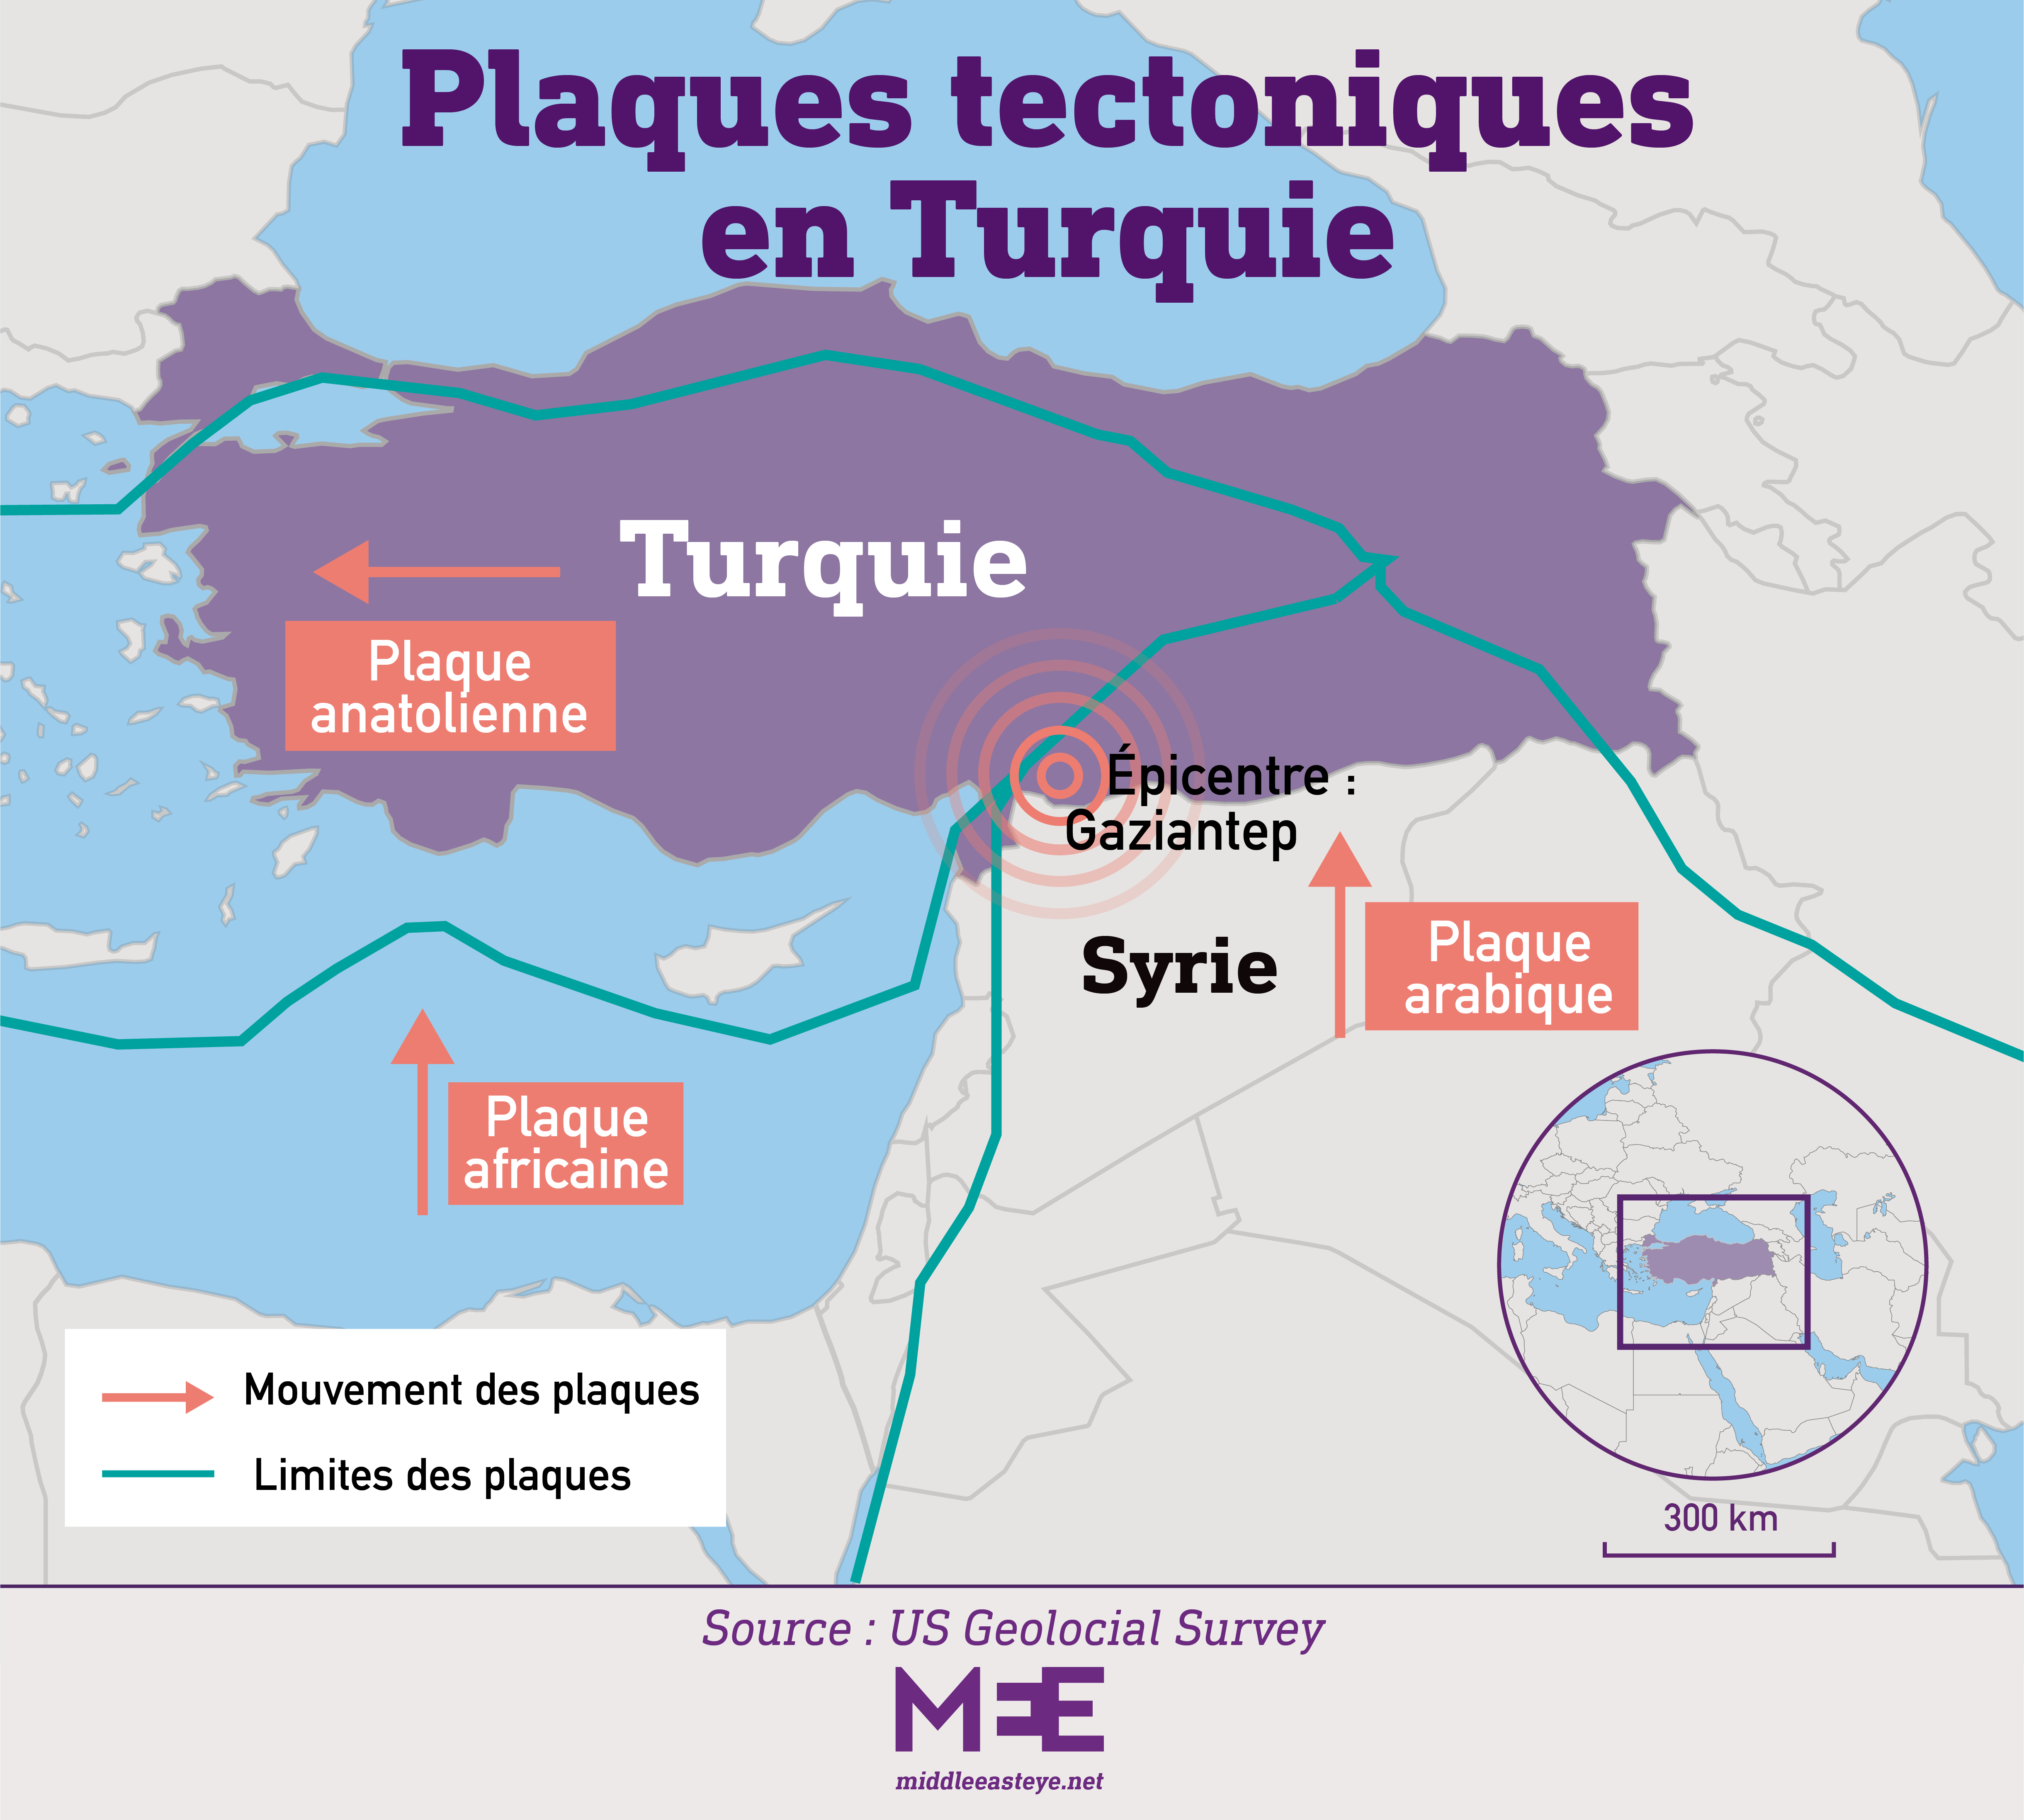 plaques tectoniques turquie